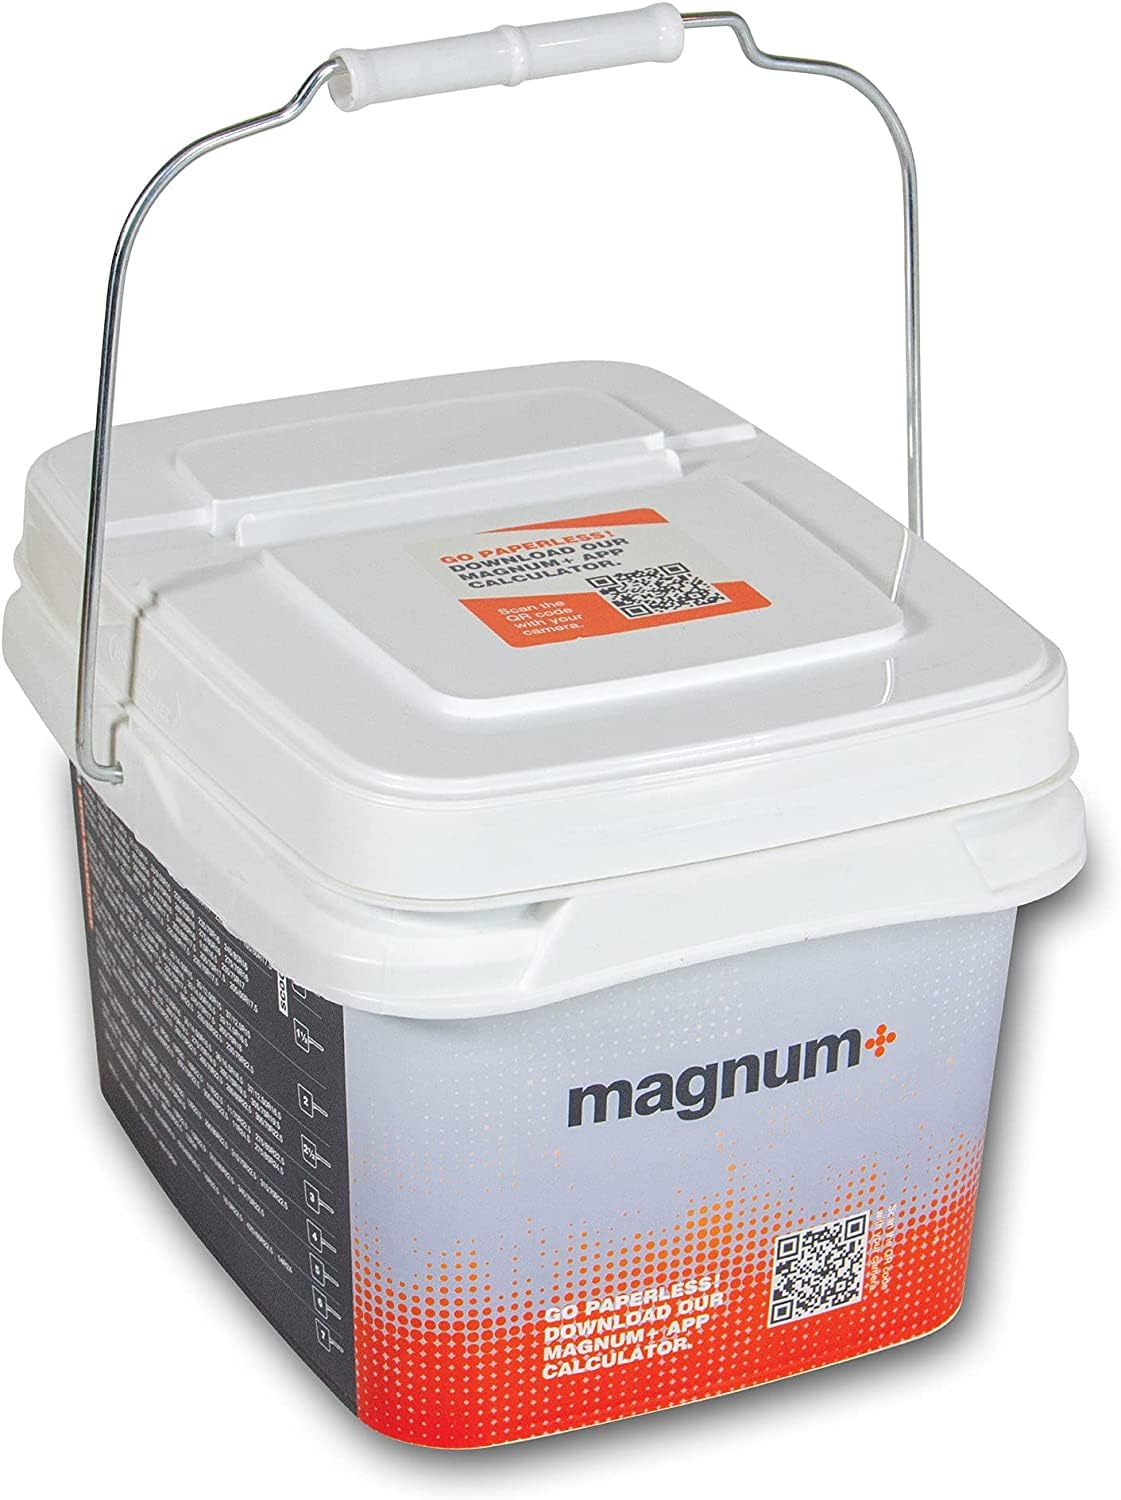 Magnum+ Reifen-Auswuchtperlen, 8 kg, mit Schaufel für LKW, SUV, Auto, Van, RV und Offroad-Reifen. TPMS-kompatibles Glas von Magnum+